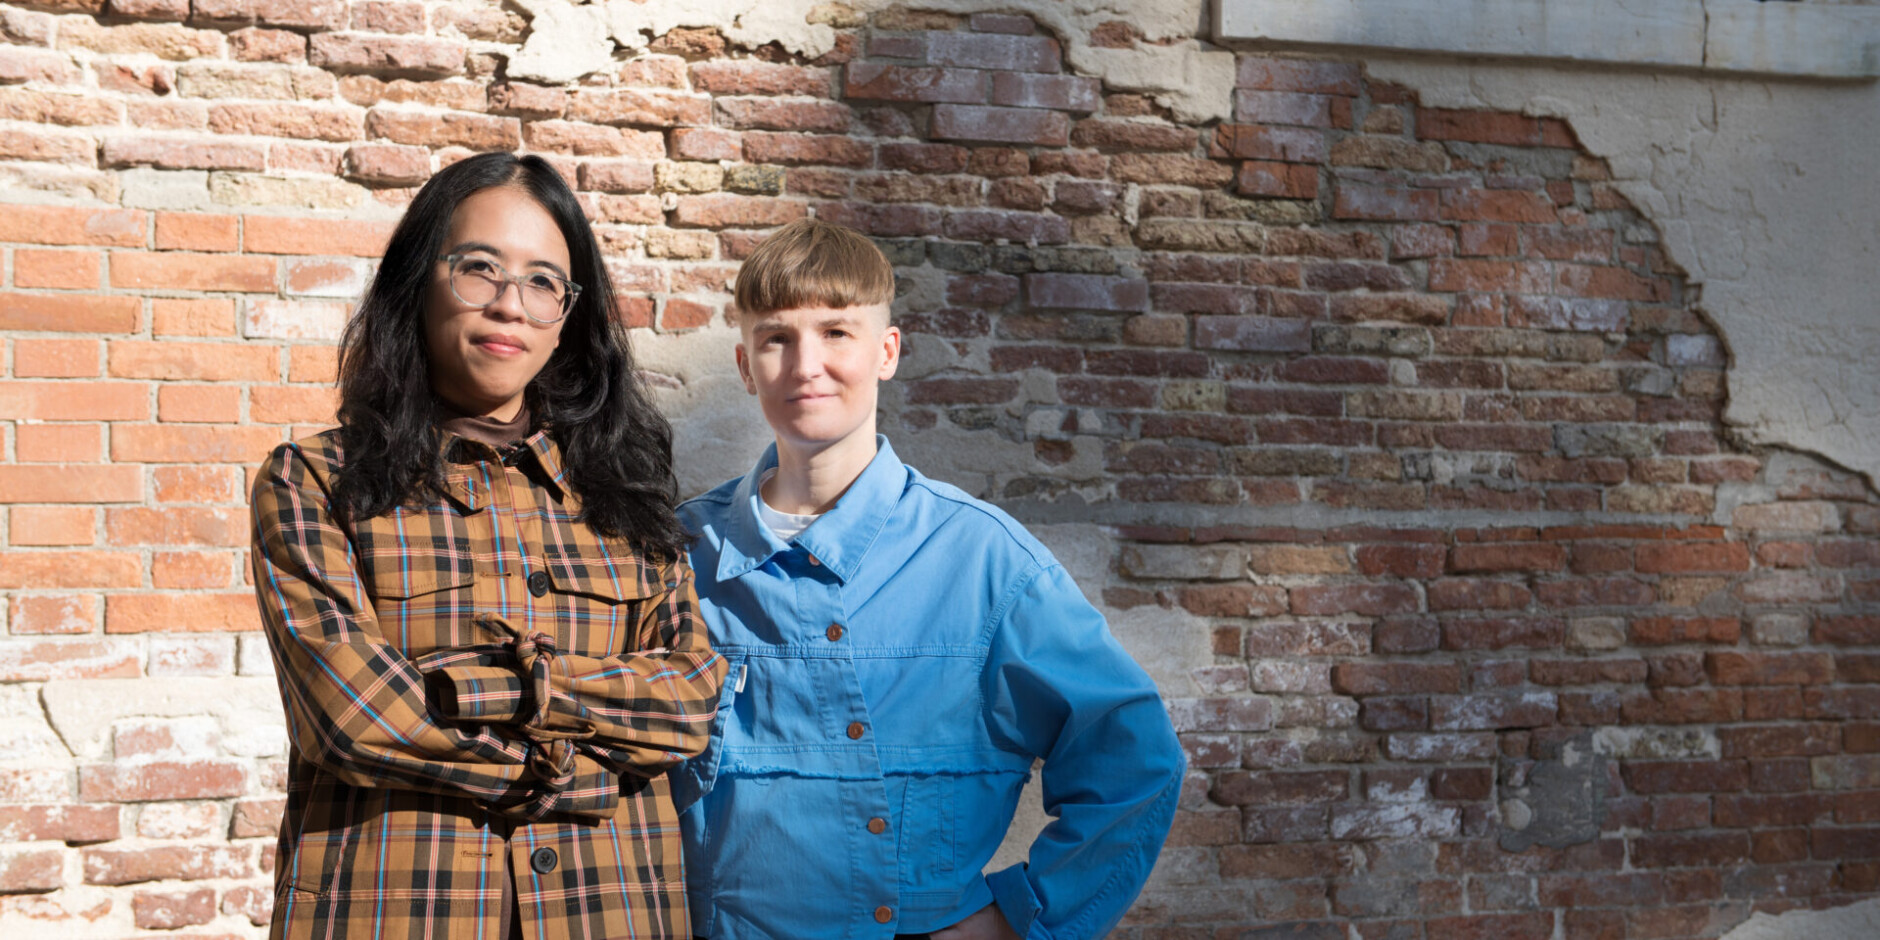 Kuraattori Christina Li ja taiteilija Pilvi Takala seisovat punatiiliseinän edessä.